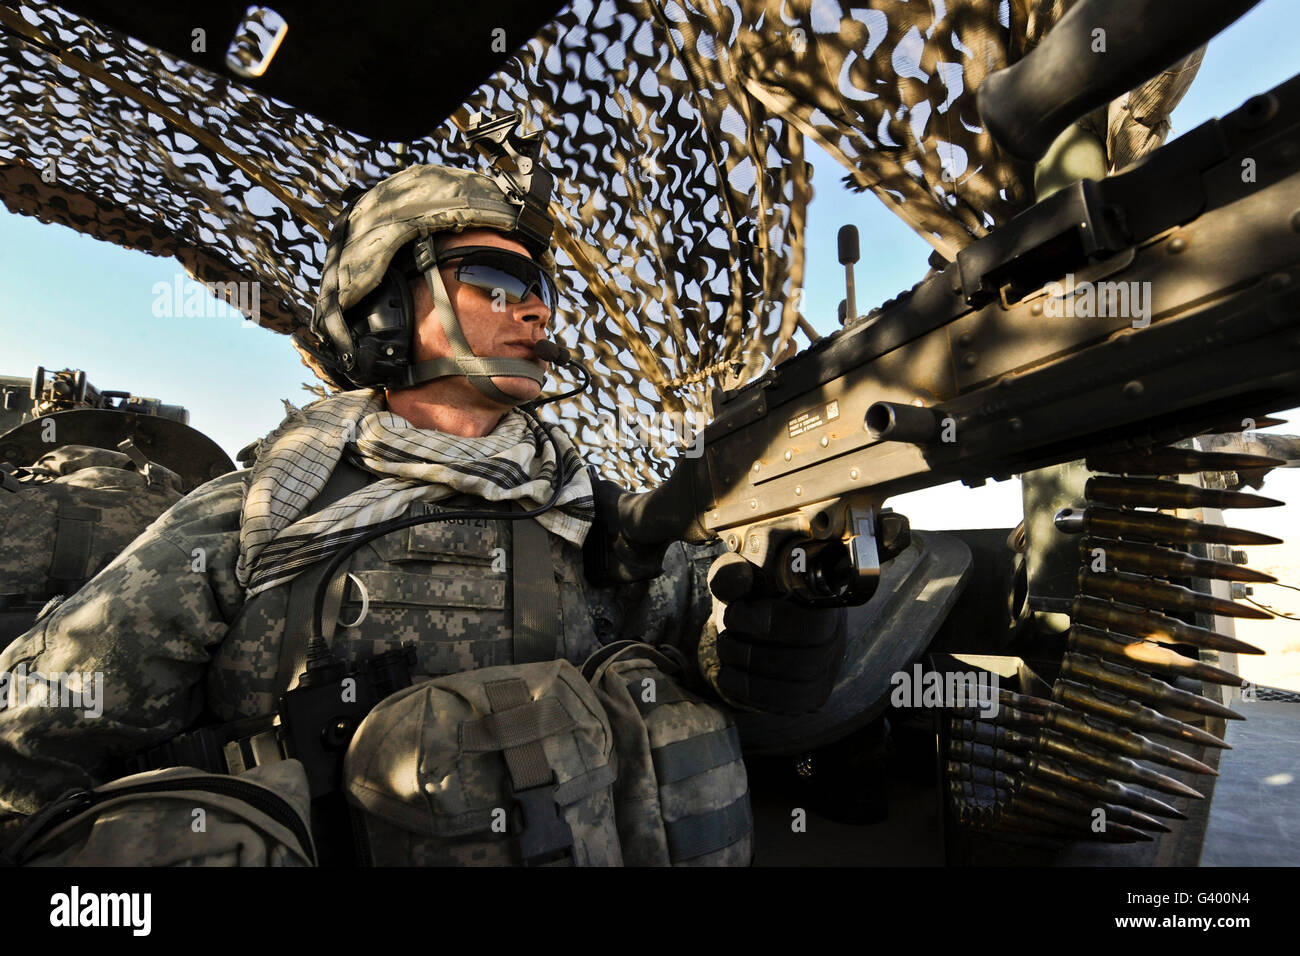 Spécialiste de l'arrière de l'armée américaine fournit la sécurité à l'intérieur d'un véhicule blindé Stryker. Banque D'Images